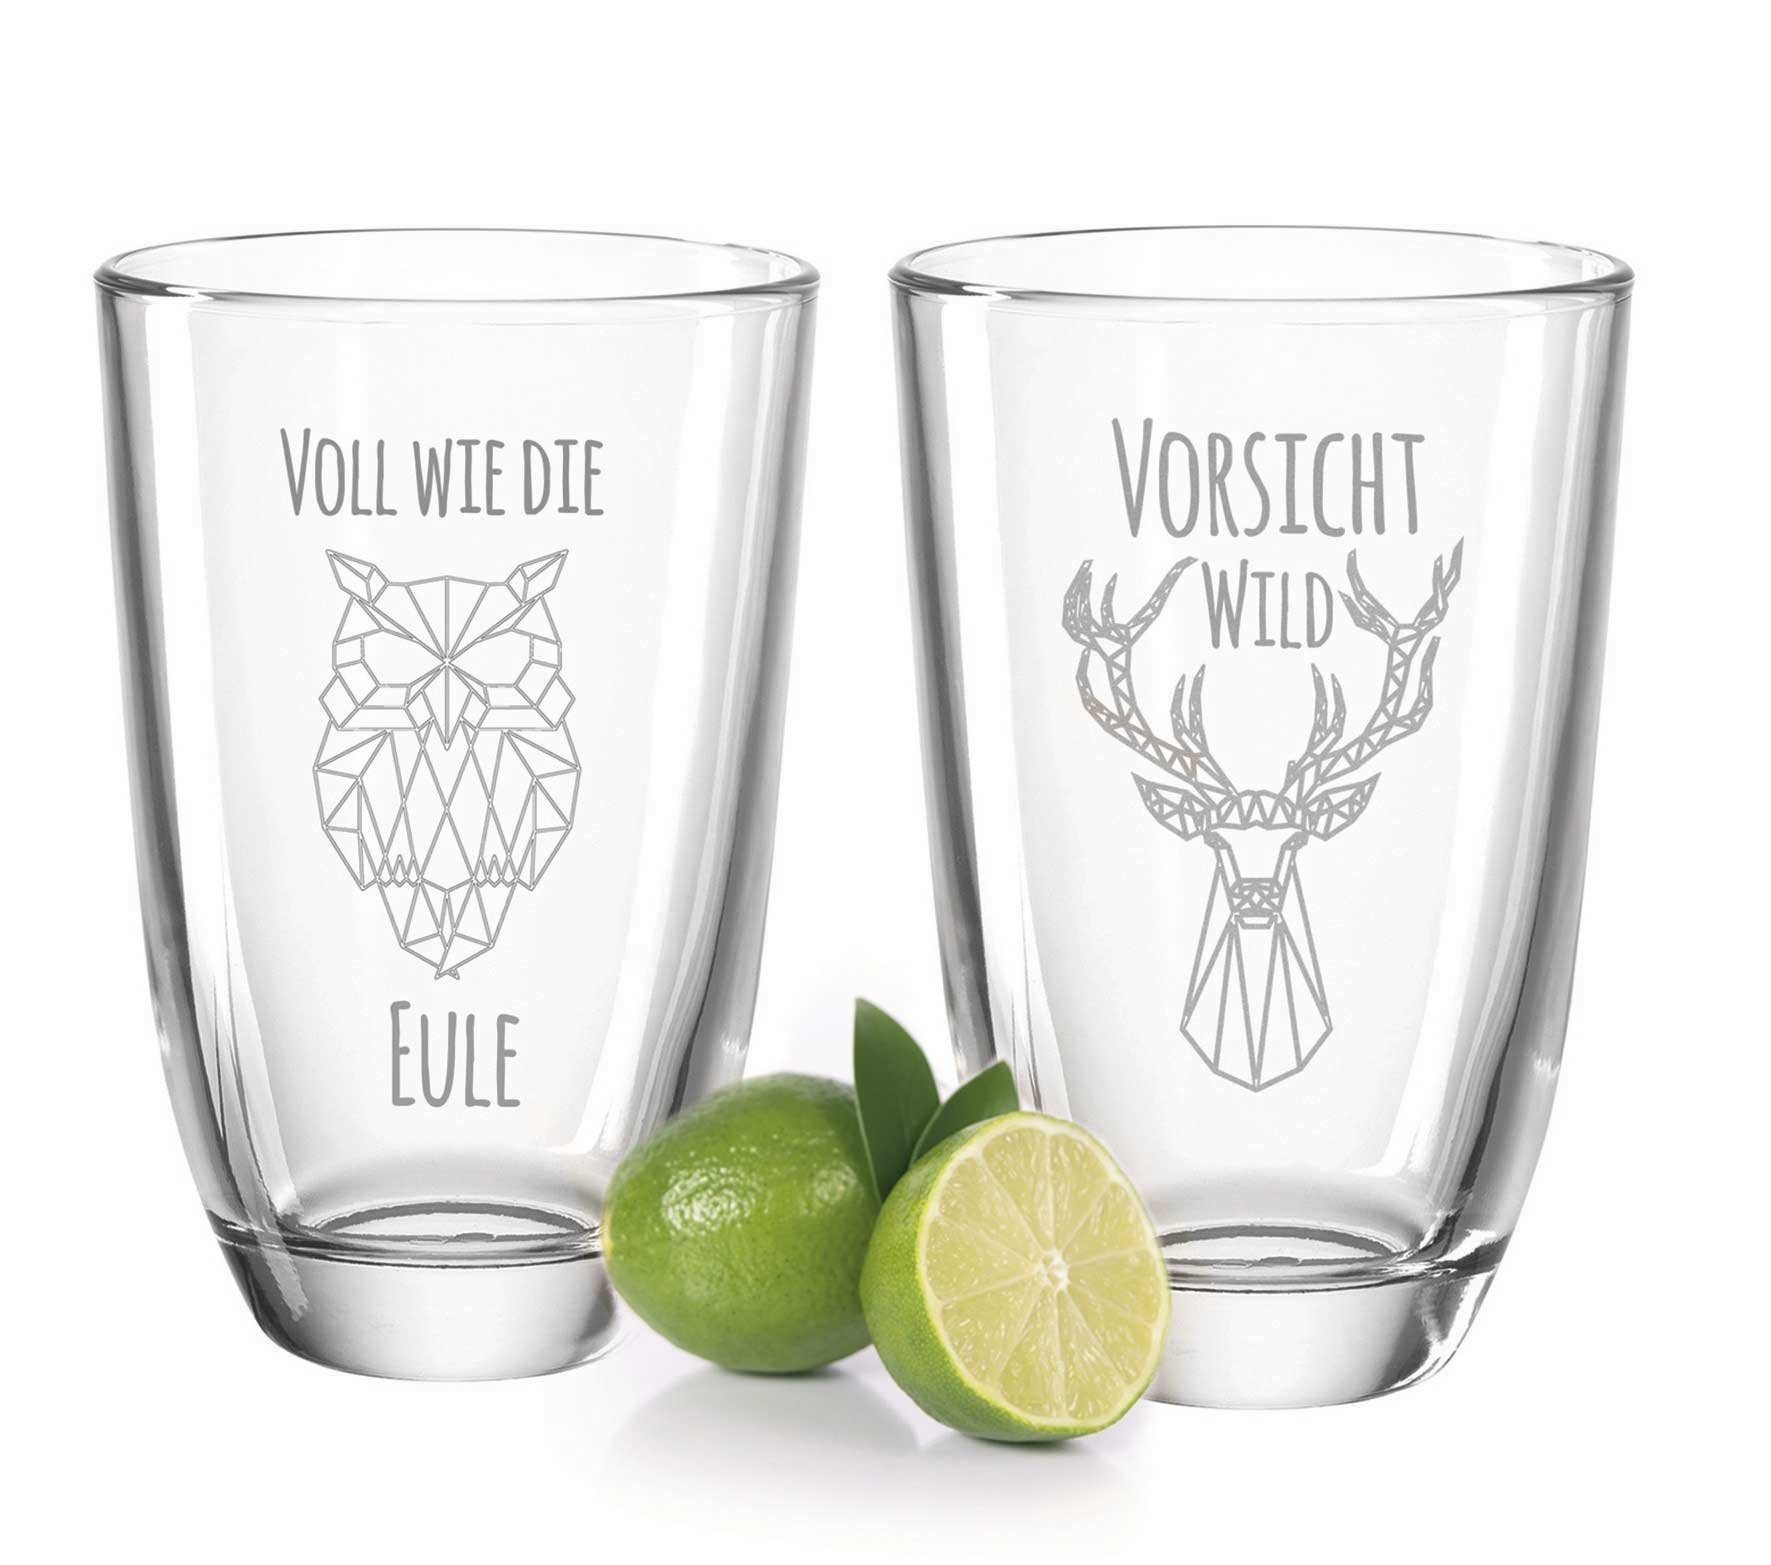 GRAVURZEILE Cocktailglas 2er Set GIN-Gläser mit Gravur - Volll wie die Eule  + Vorsicht Wild!, Glas, Witzige GIN-Geschenkidee